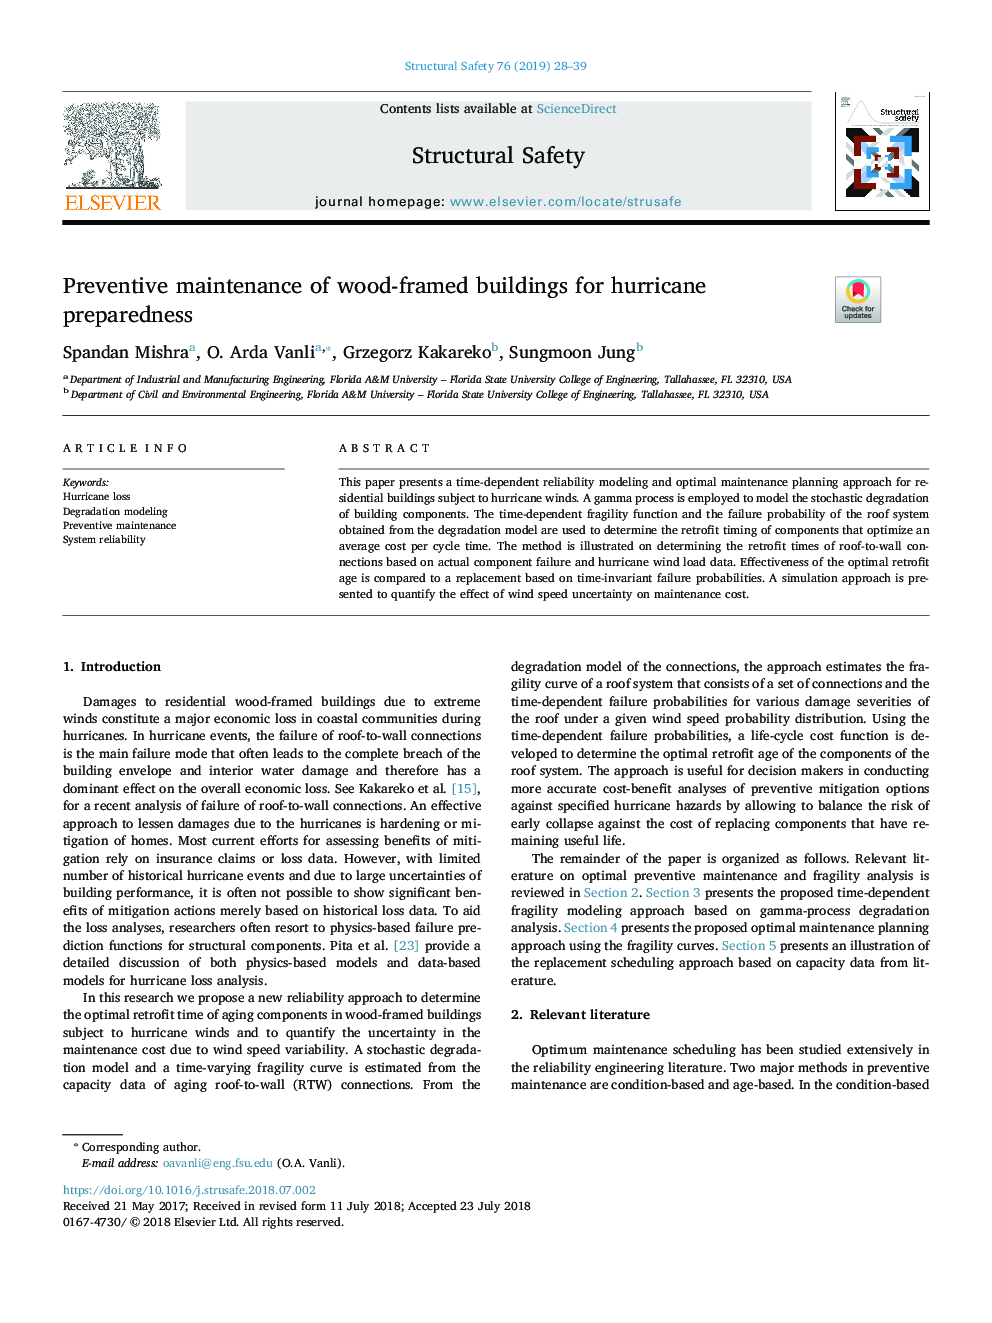 Preventive maintenance of wood-framed buildings for hurricane preparedness